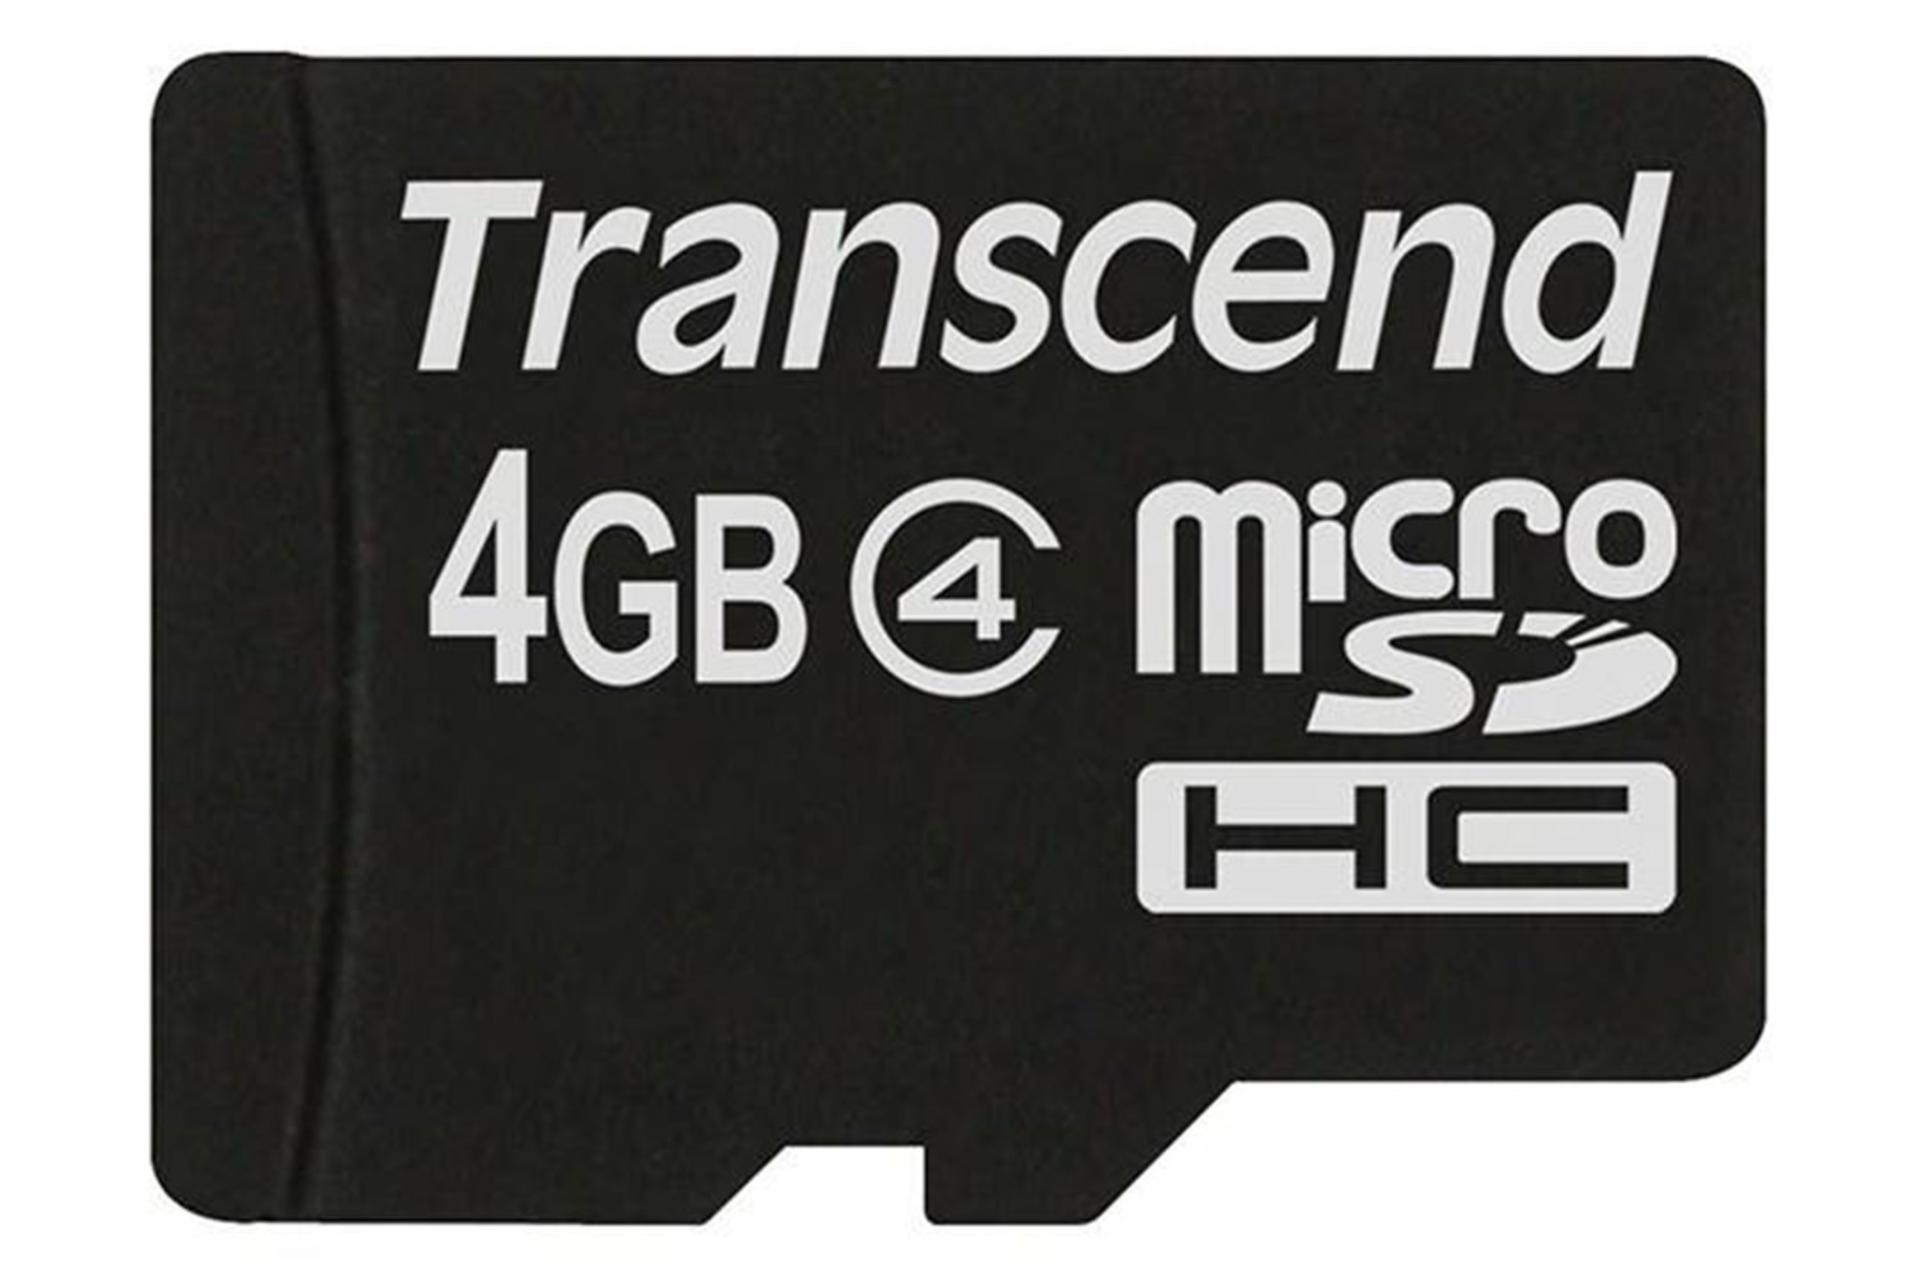 Transcend microSDHC Class 4 4GB